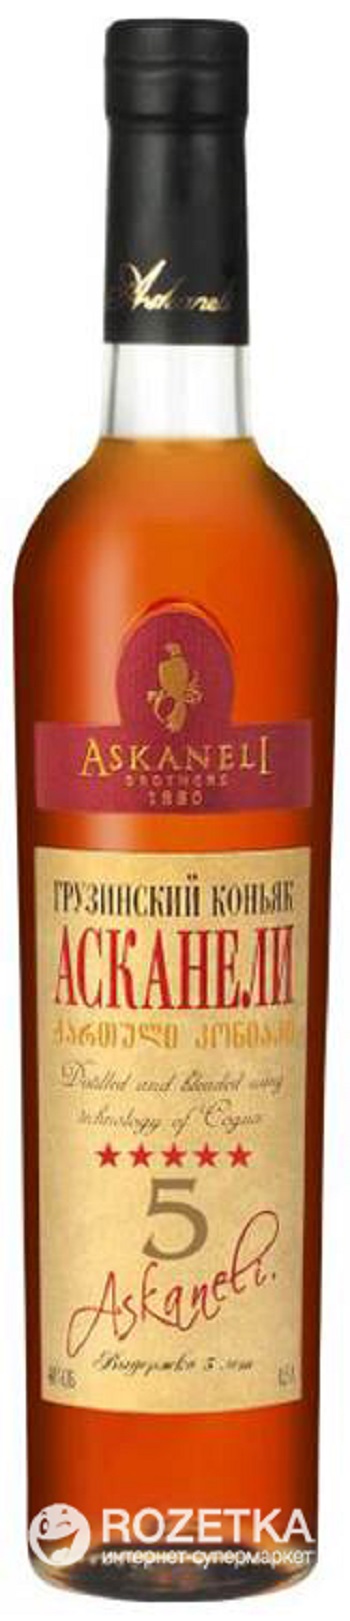 Askanel - Cognac 5 * 0.5 l